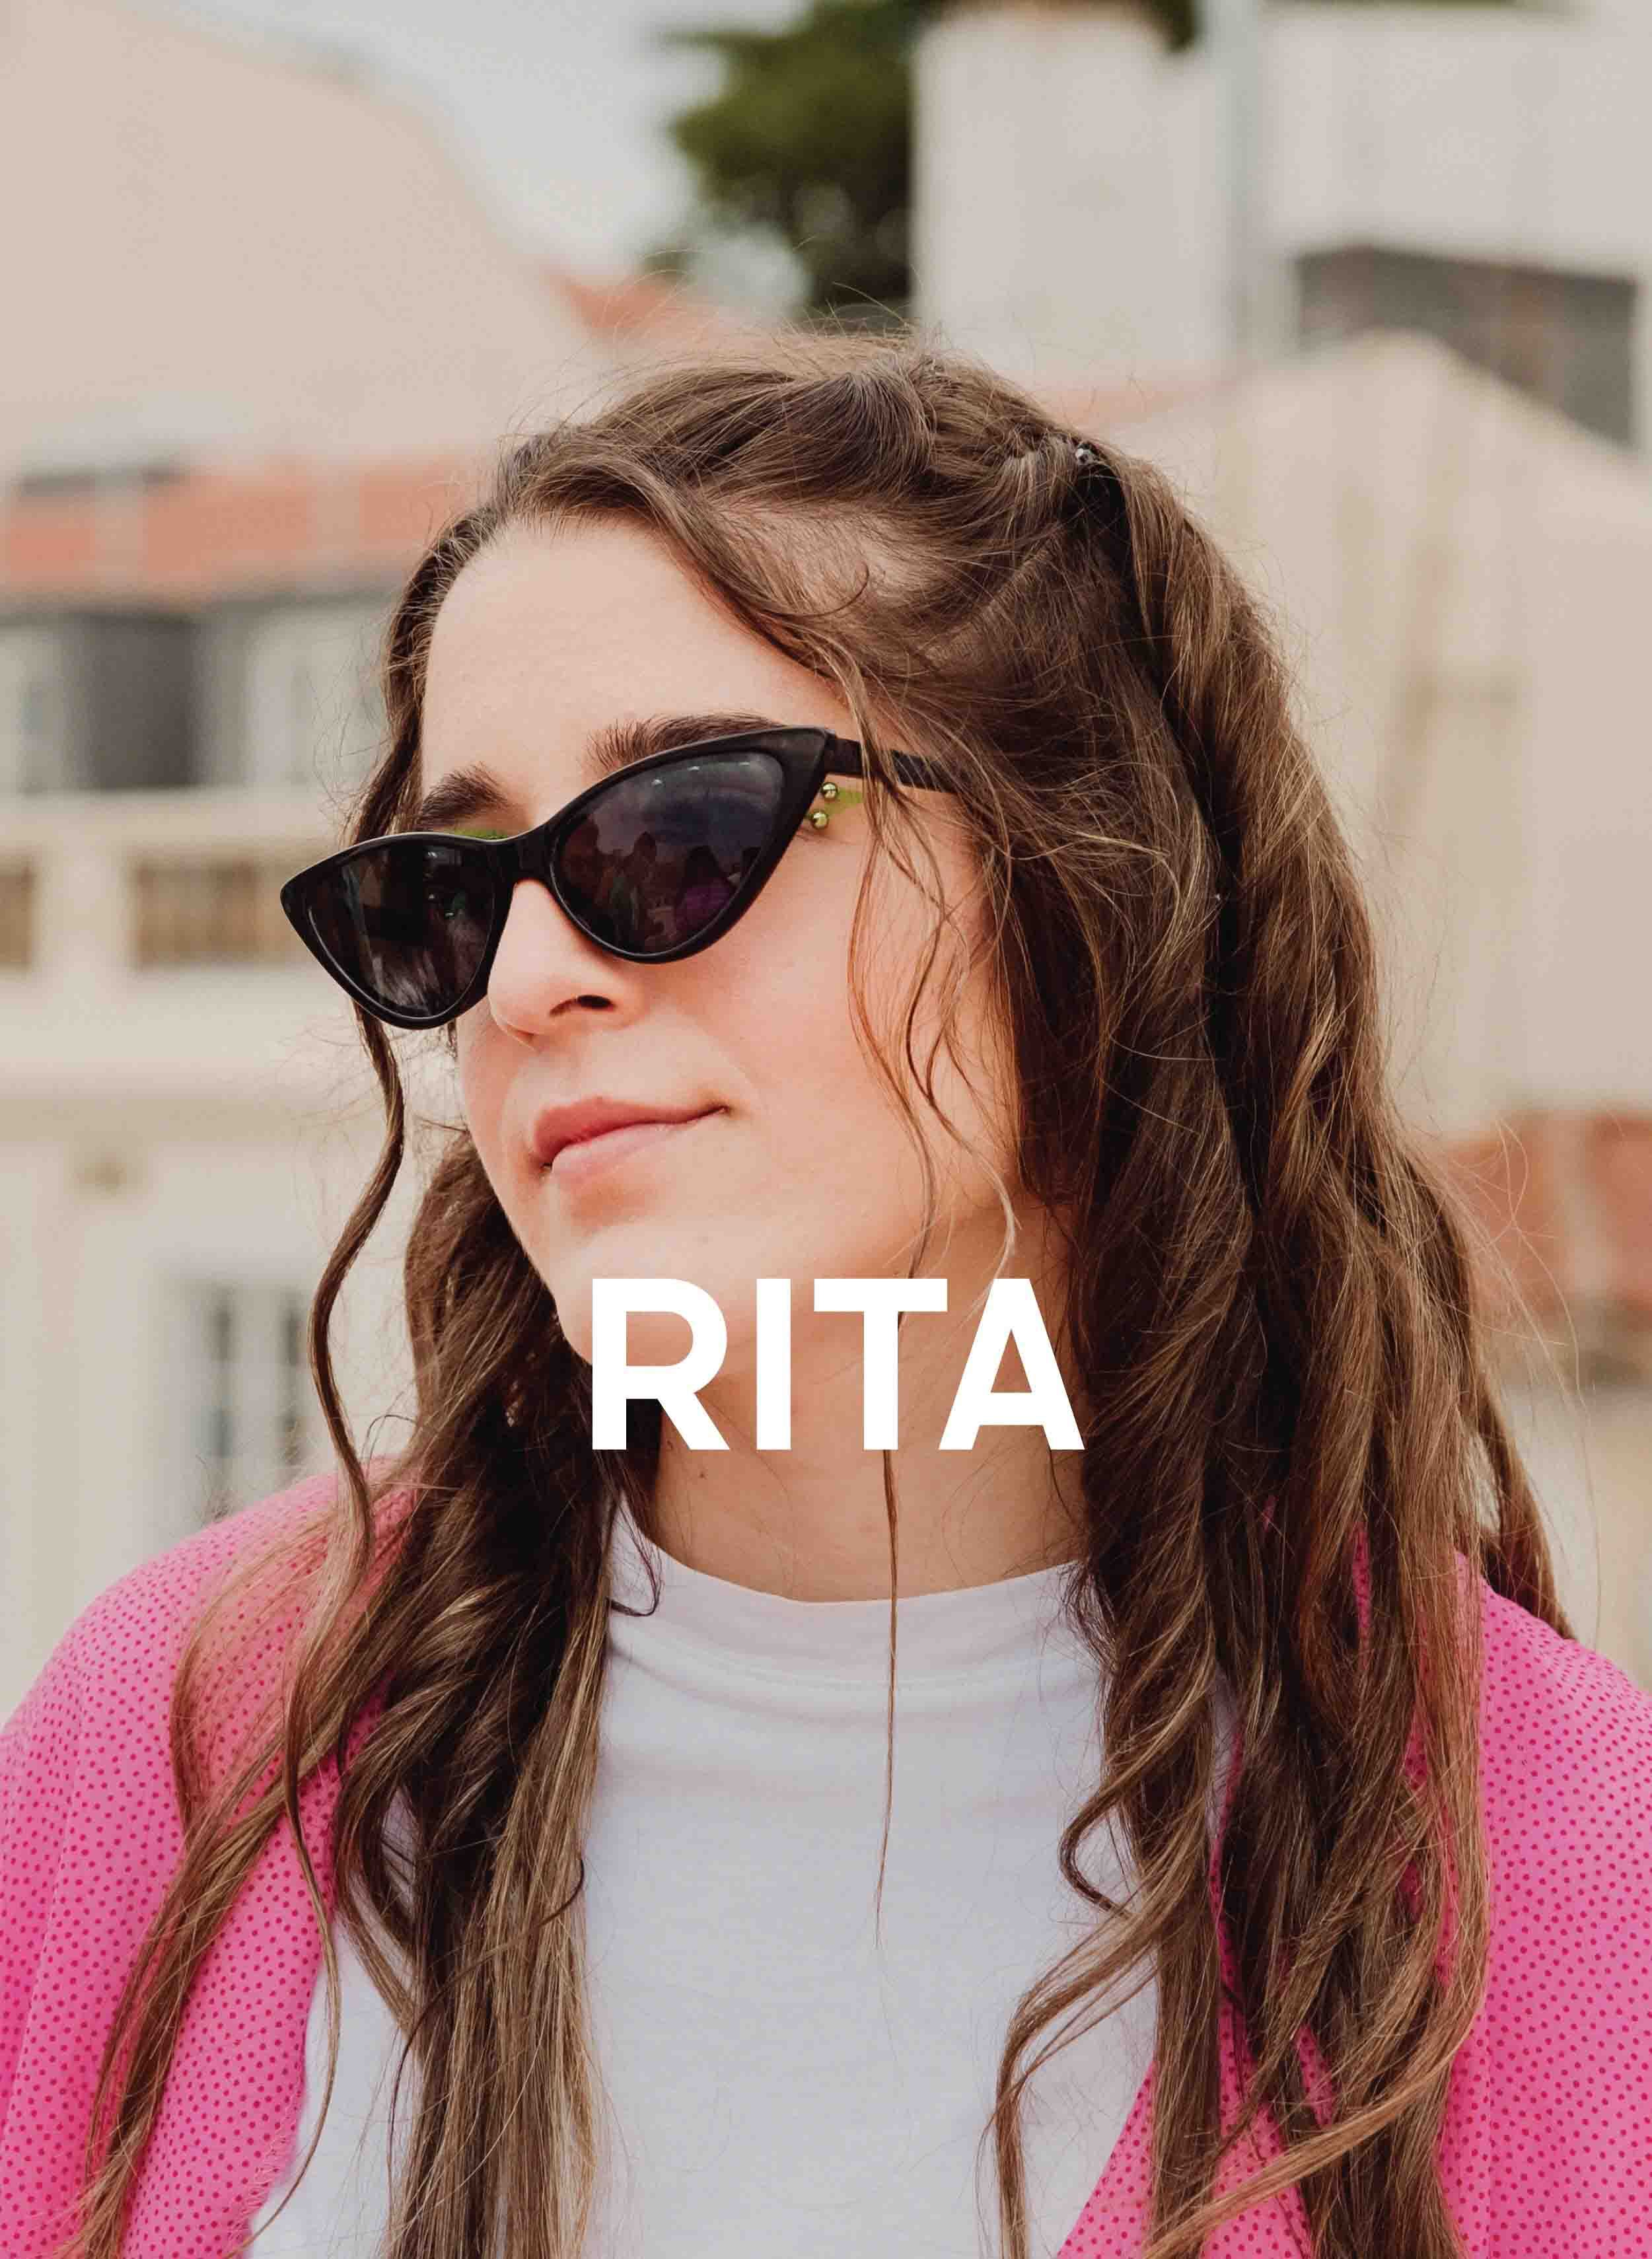 Ein Bild von Rita.